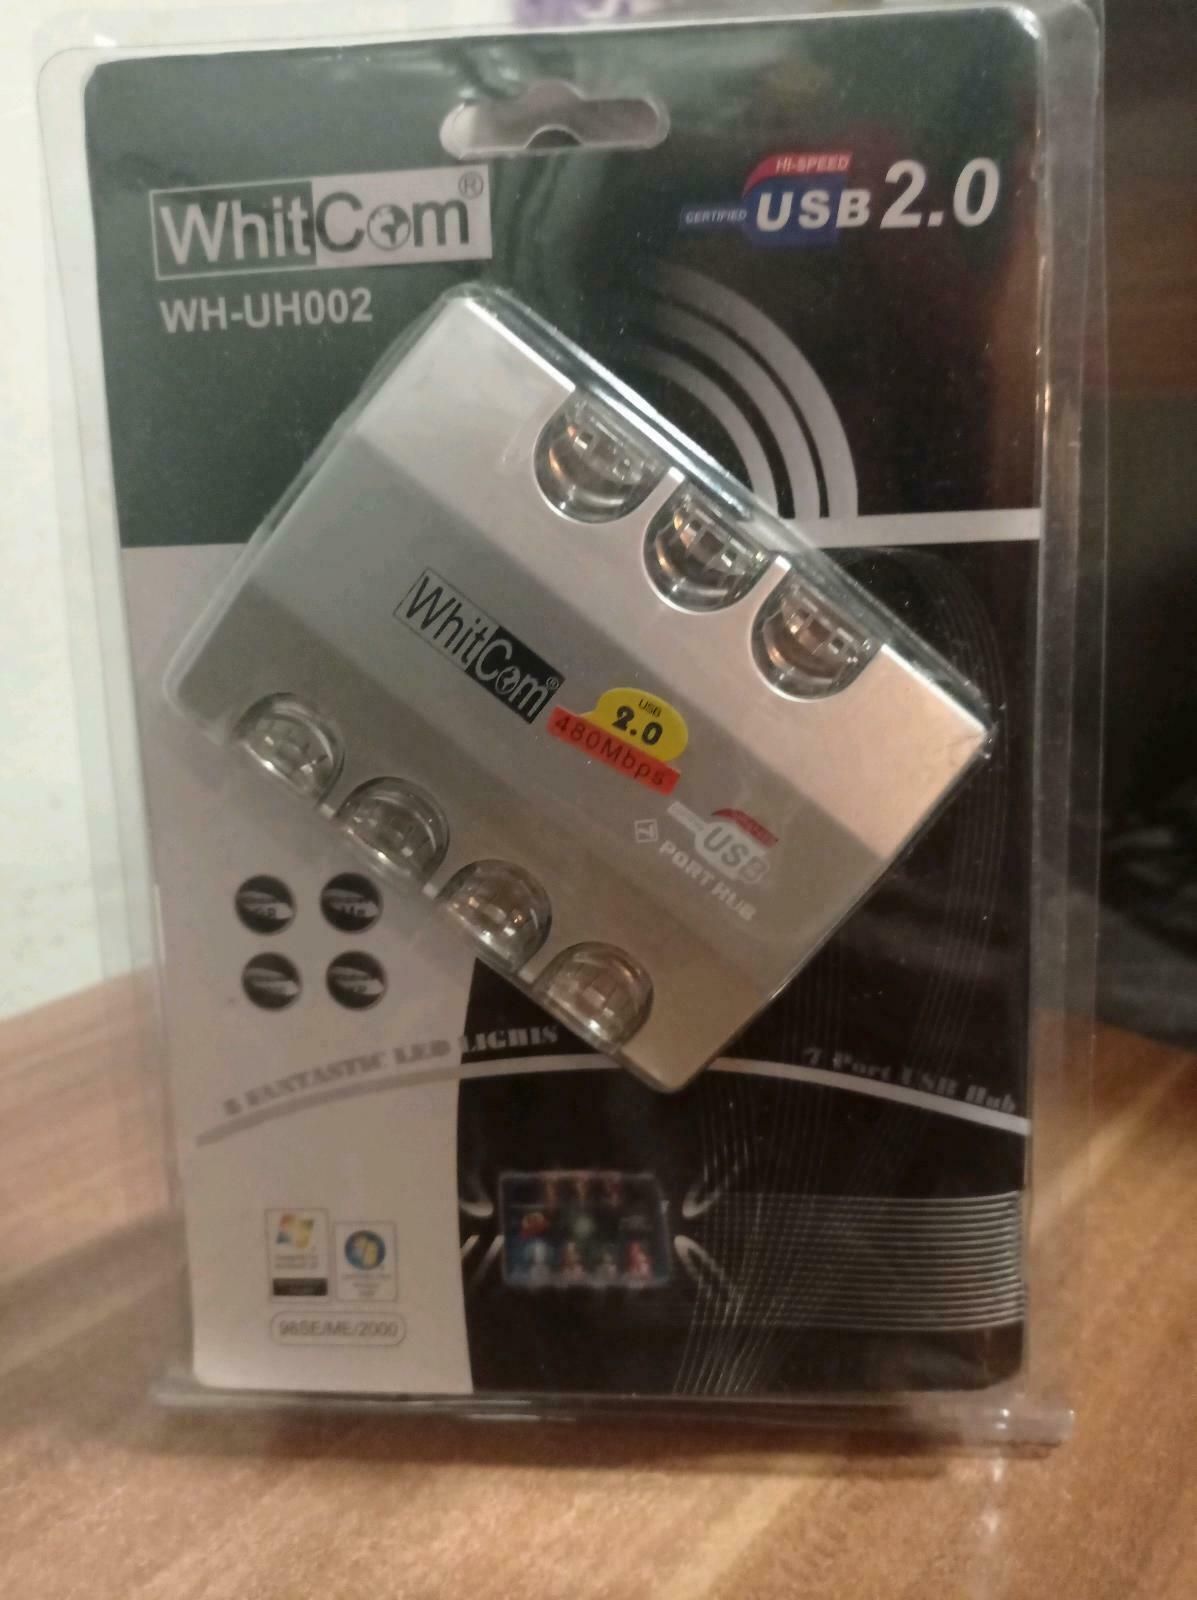 USB HUB Whitcom WH-UH002 7-Port inkl. Netzteil silber LED 1,5/12/480 Mbps